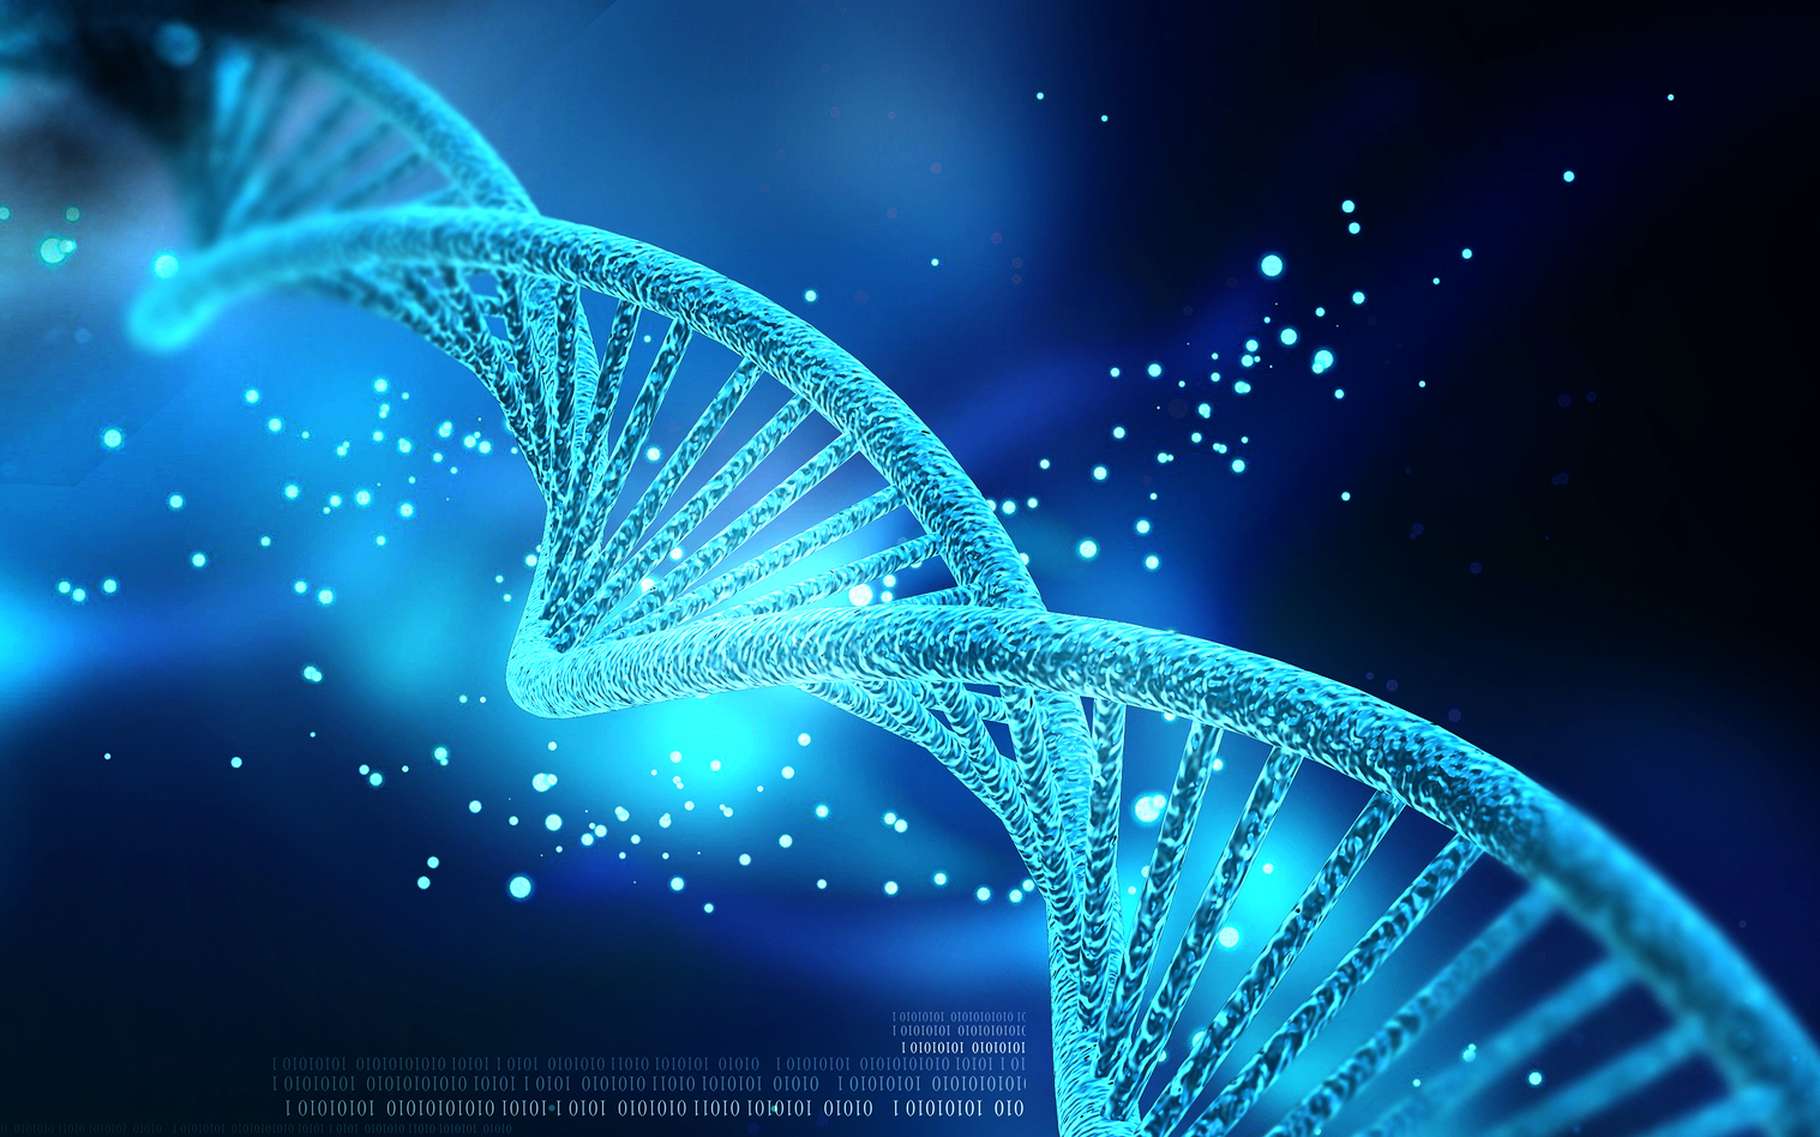 Définition | ADN - Acide DésoxyriboNucléique | Futura Santé